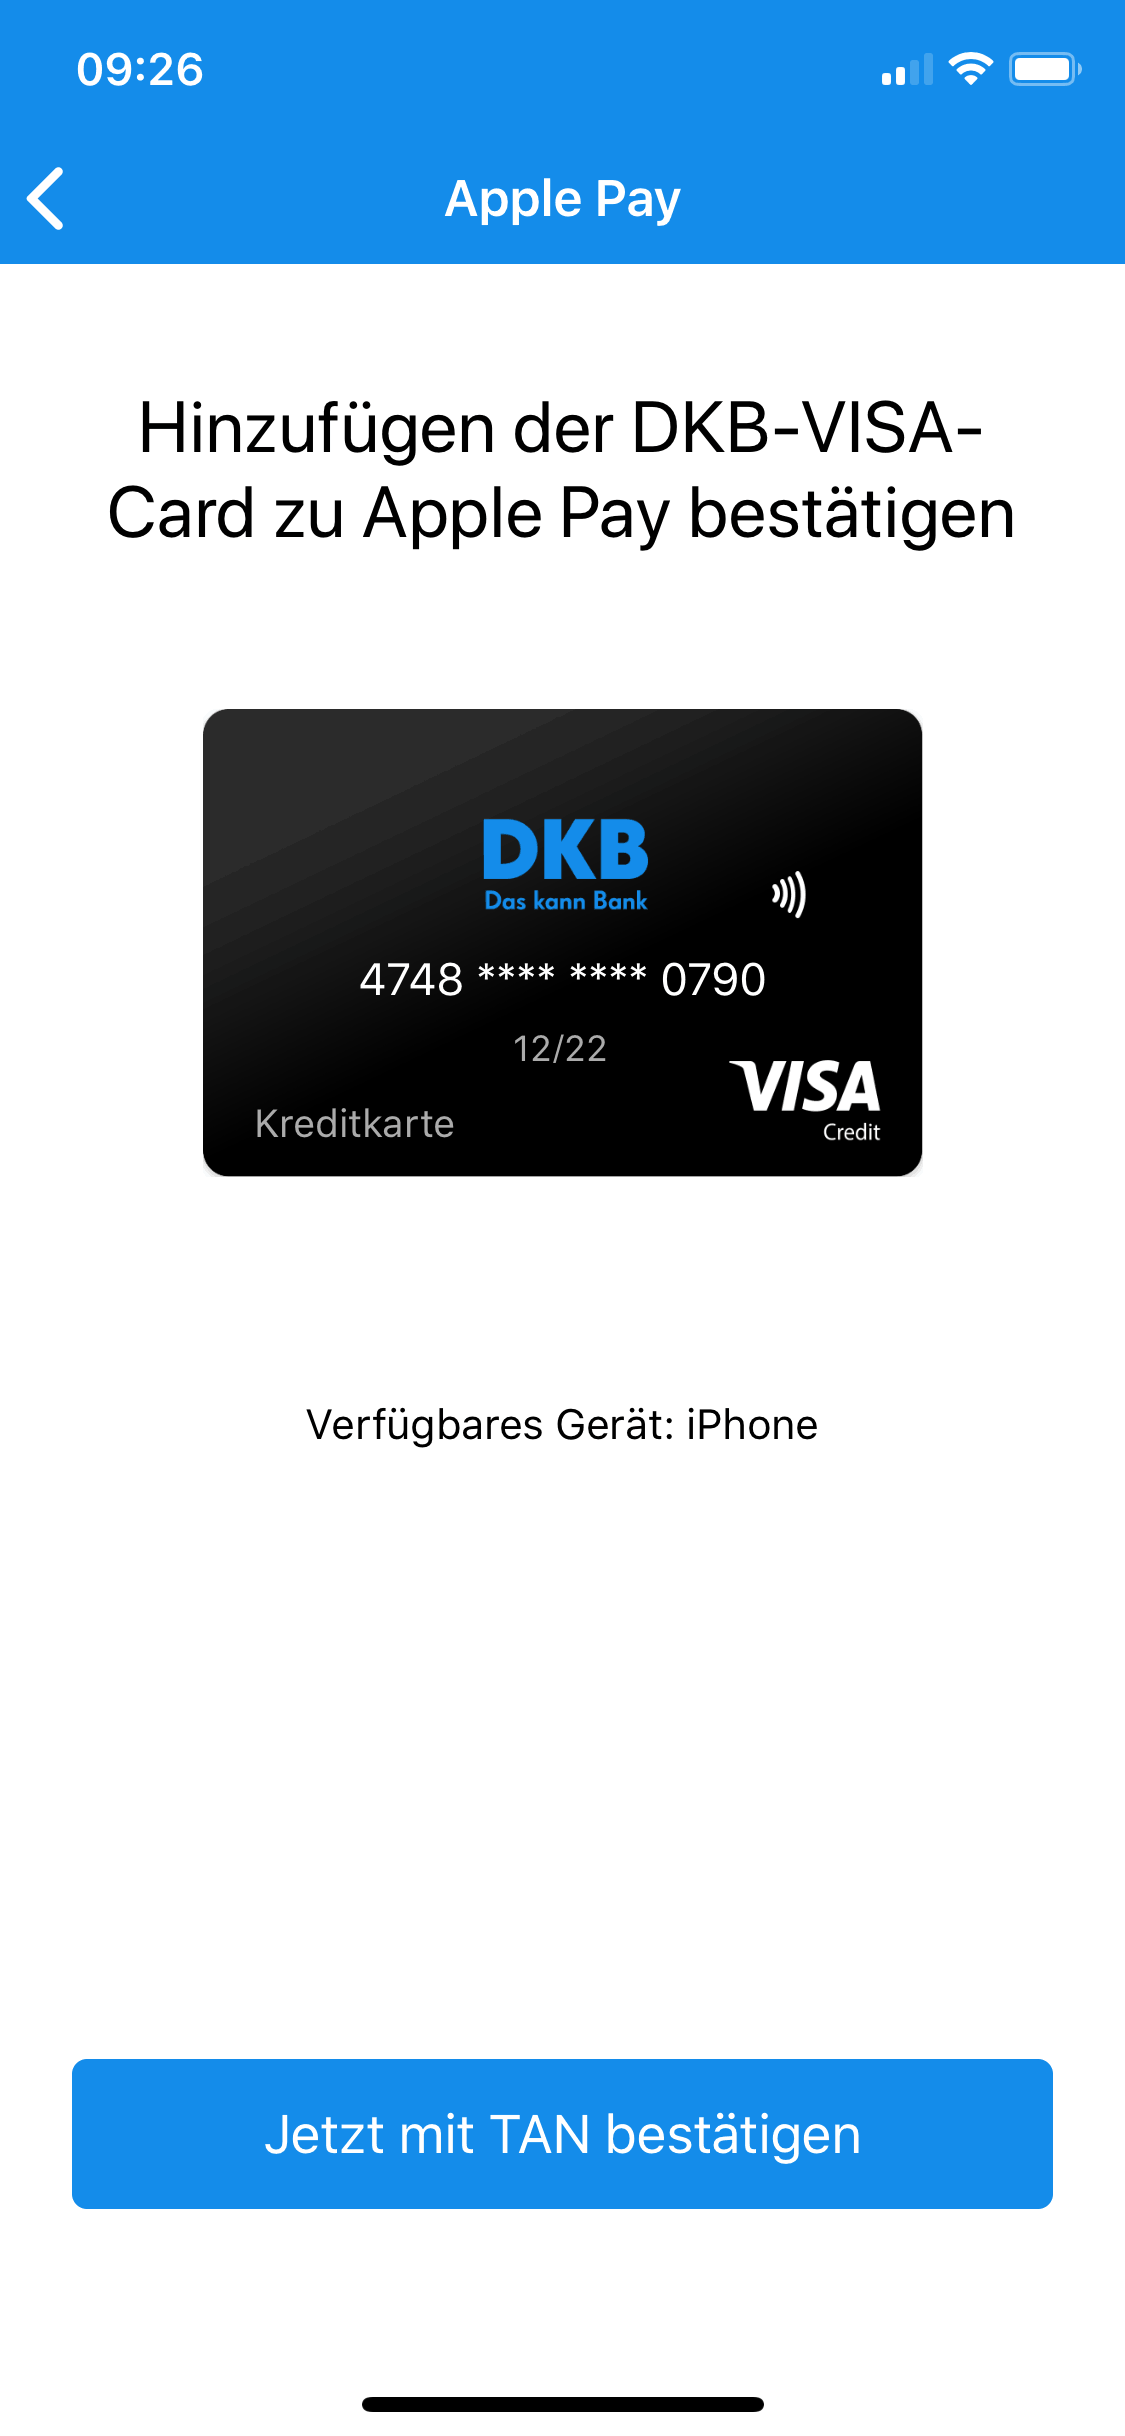 Deutsche Kreditbank - DKB-App - Apple Pay - DKB-VISA-Card - Hinzufügen